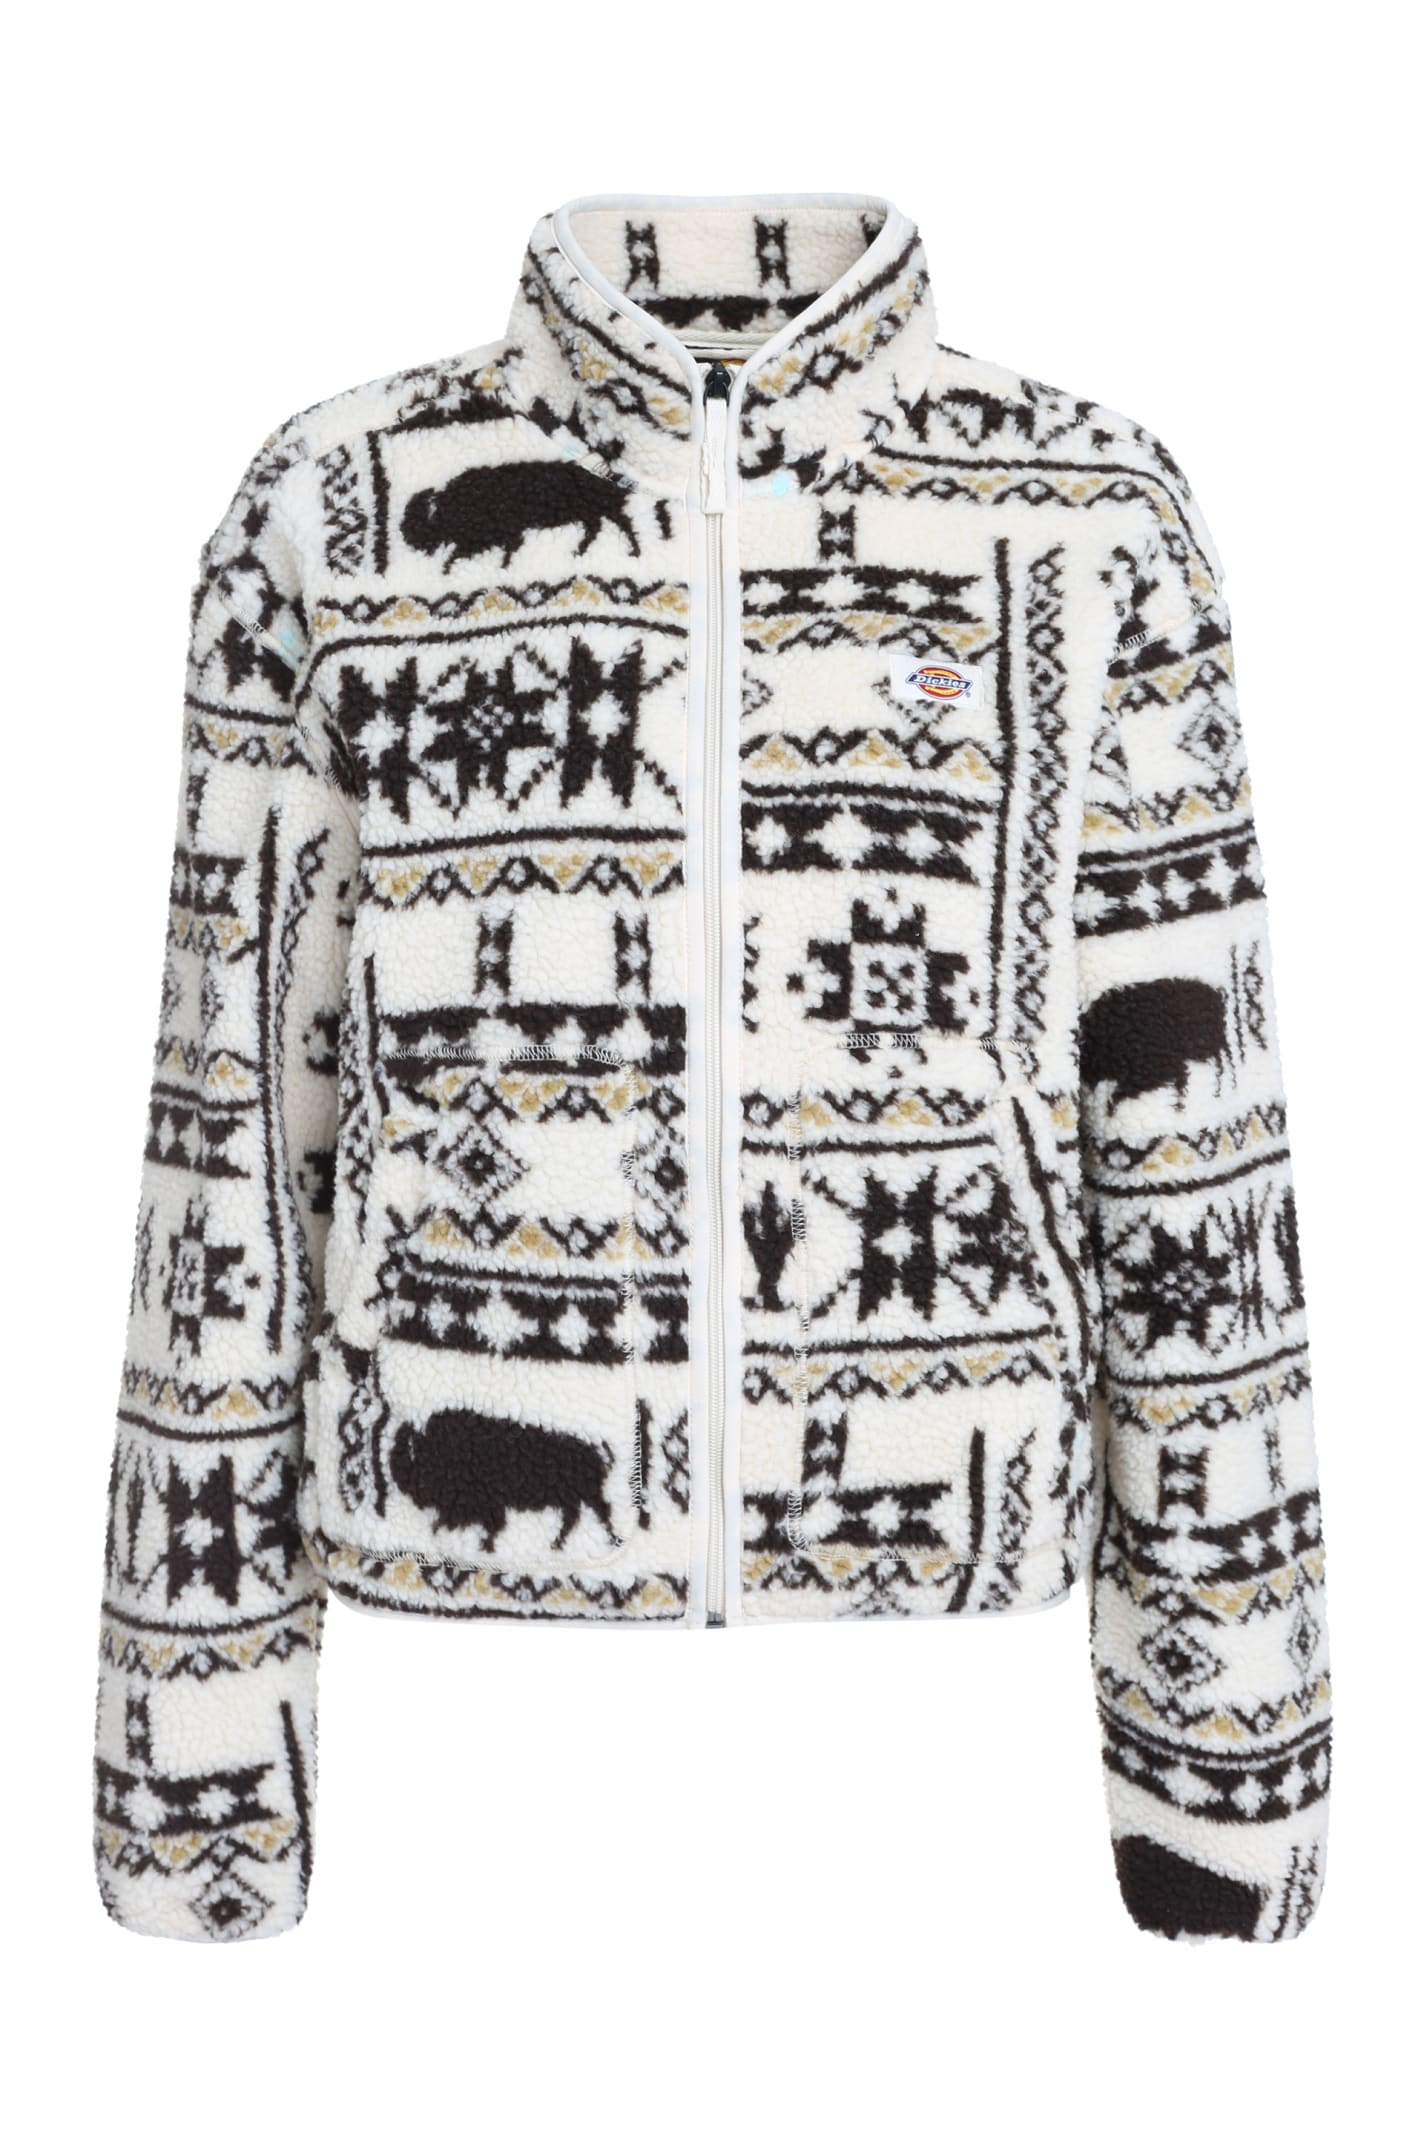 Hays Stand-up Collar Fleece Sweatshirt